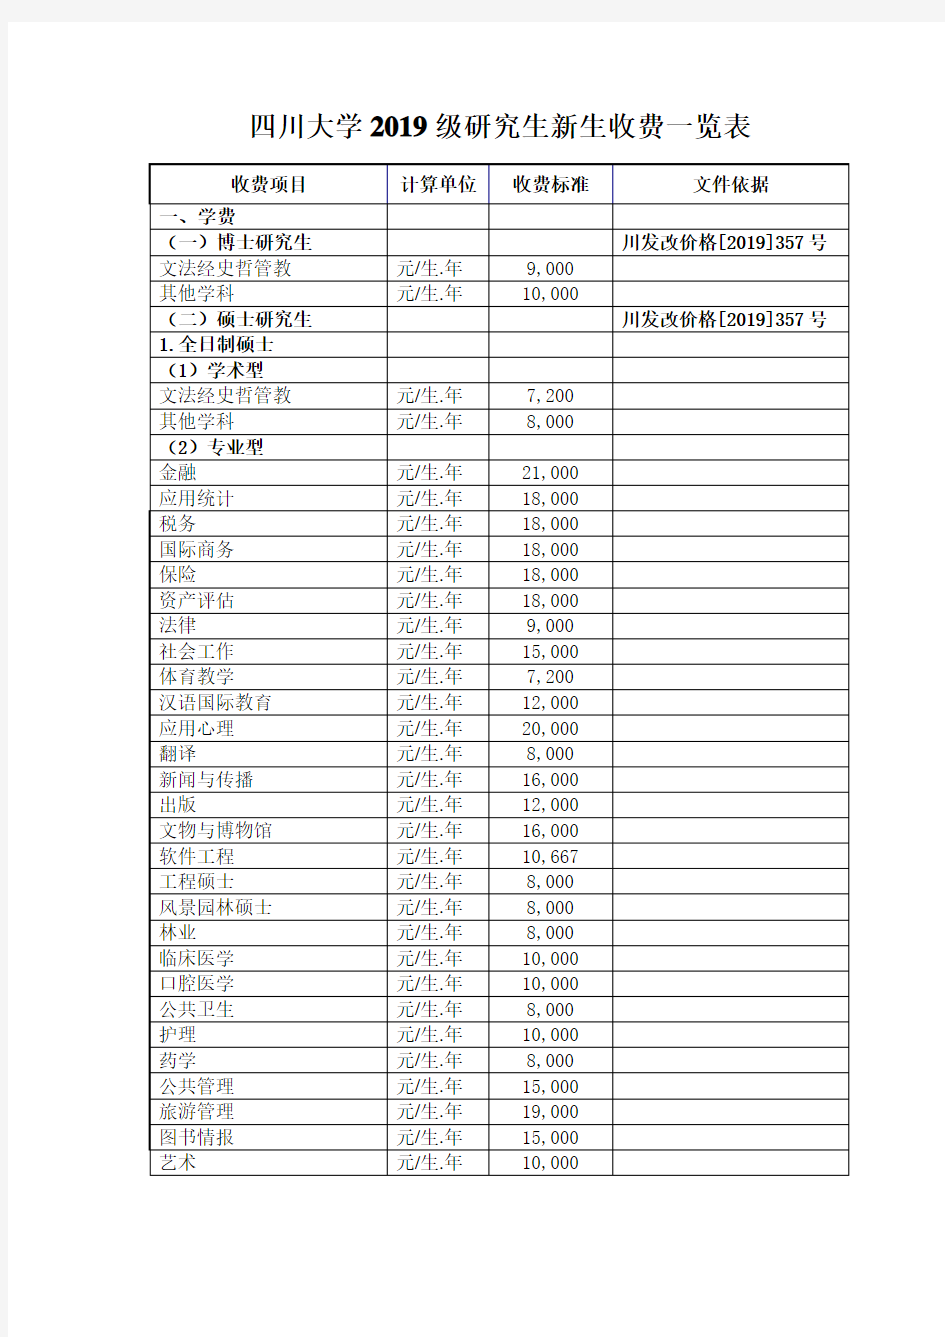 四川大学2019级研究生新生收费一览表